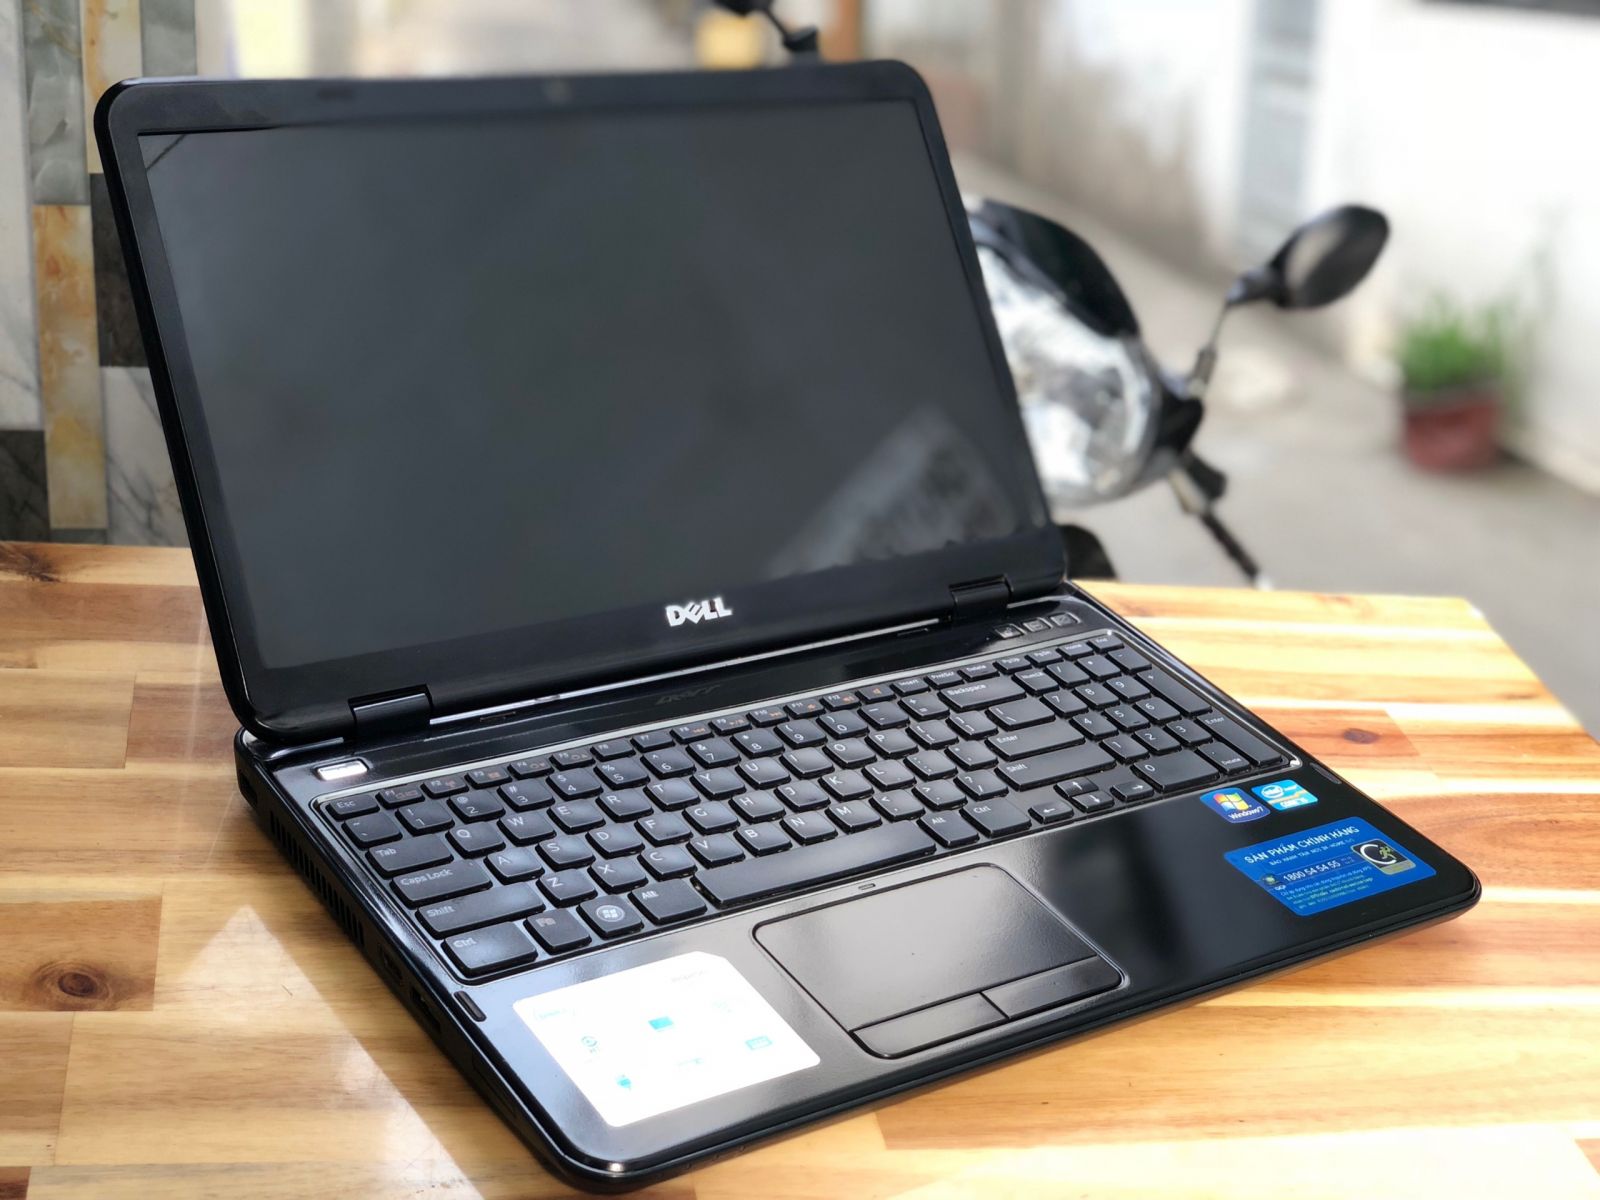 Laptop Dell Inspiron N5110 , i5 2540M 4G 500G 15inch Đẹp Keng Giá rẻ - 2